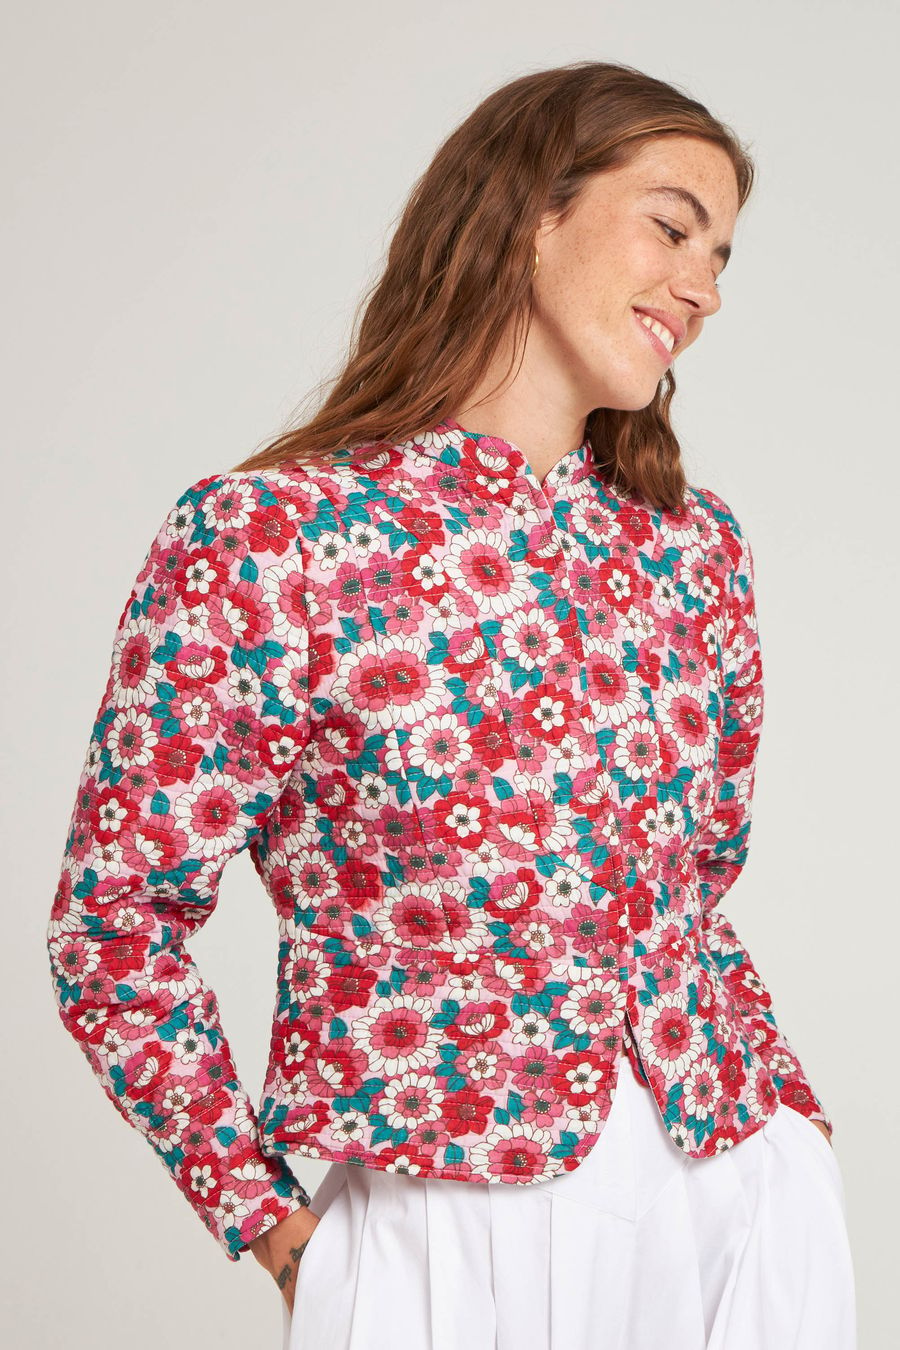 Antikbatik Blossom quilted jacket